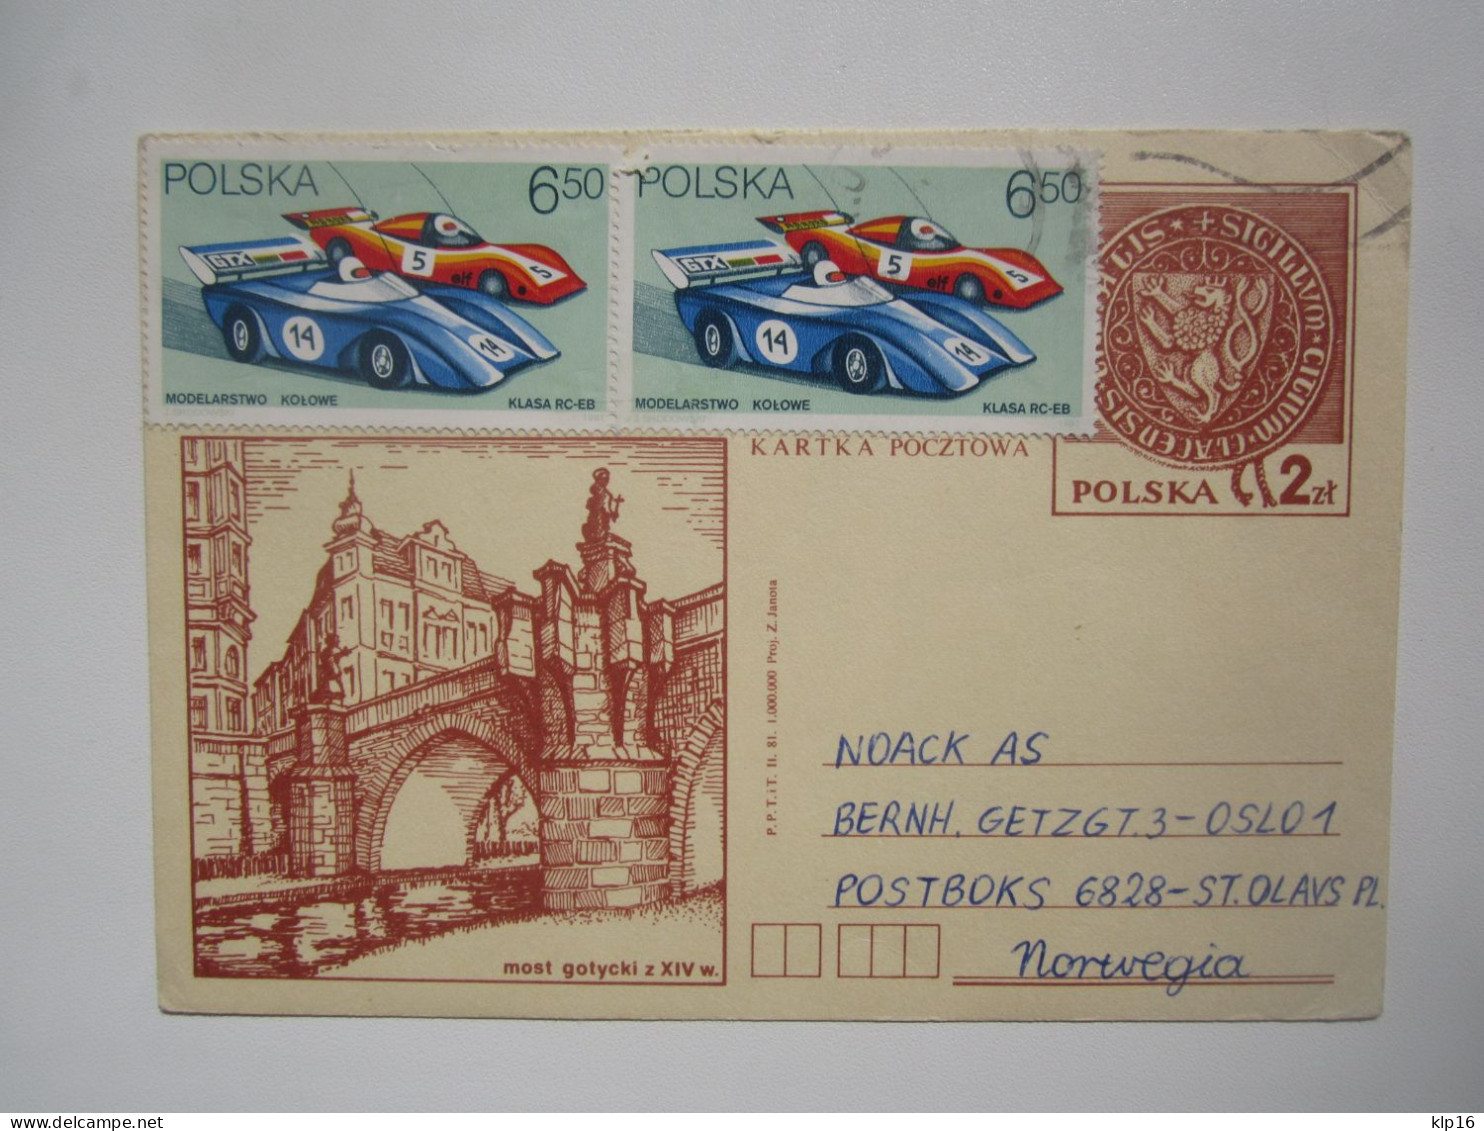 POLAND POSTAL CARD To NORWAY - Storia Postale